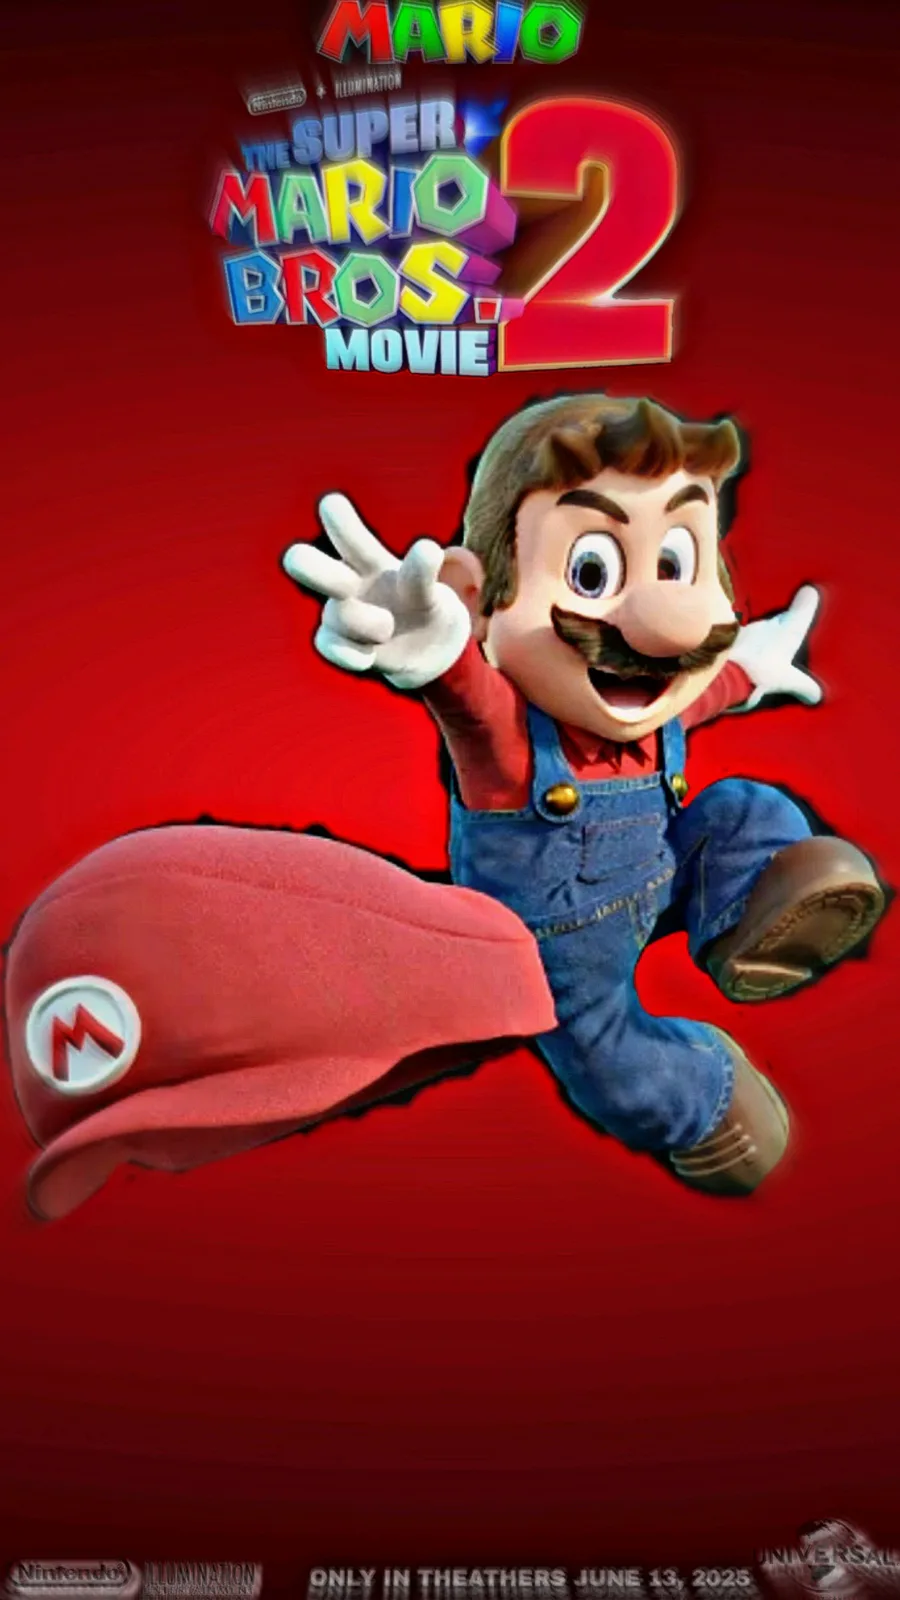 SuperJoseBros on Game Jolt: Meus pôster fan-made de Super Mario Bros. 2 O  Filme